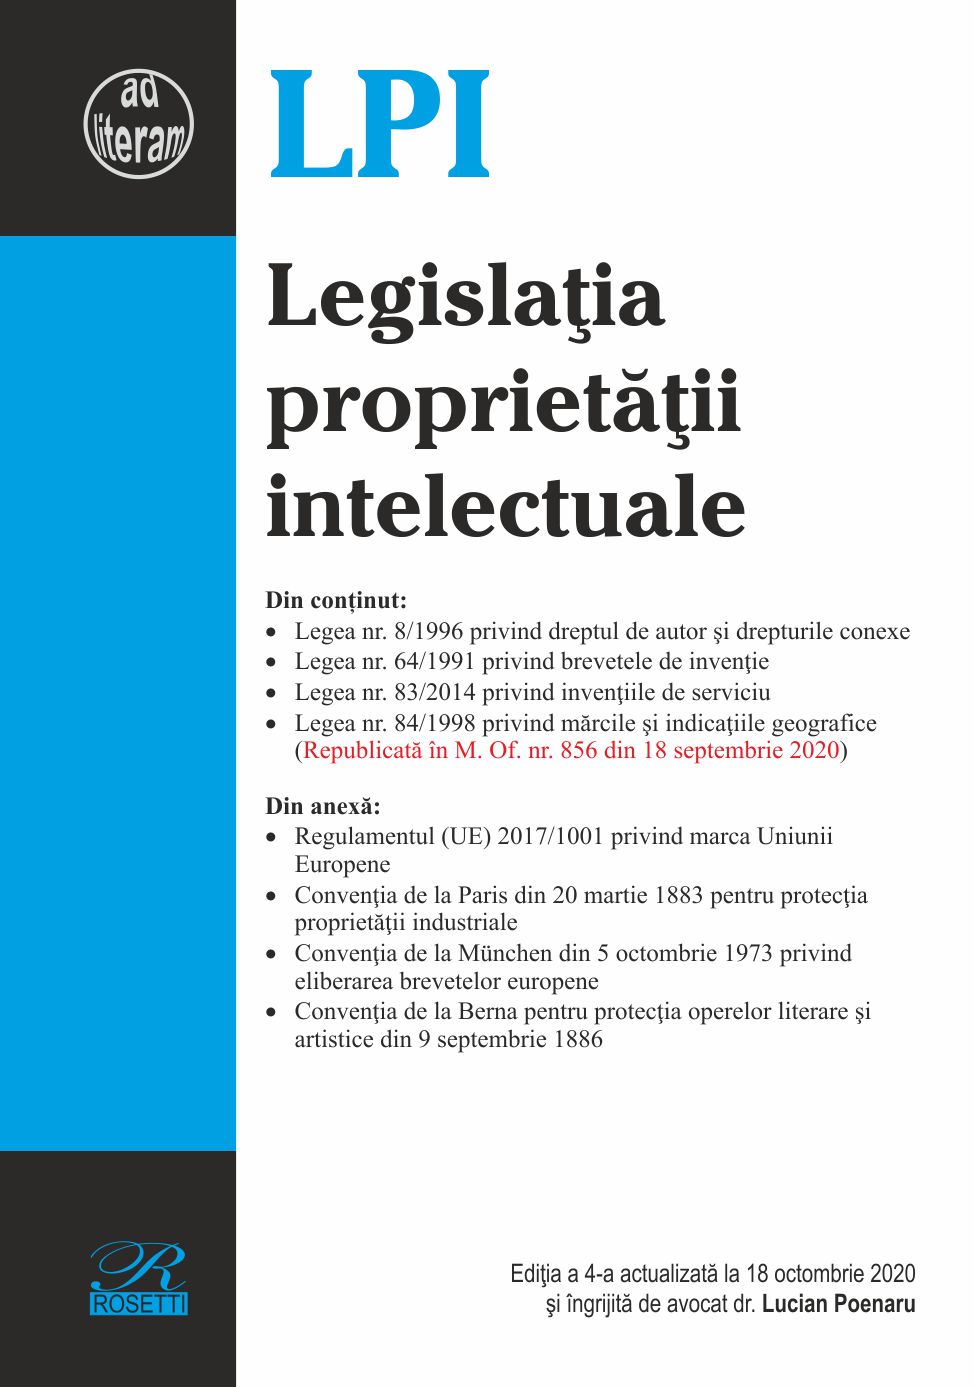 Legislatia proprietatii intelectuale. Editia a 4-a actualizata la 18 octombrie 2020 | Lucian Poenaru carturesti.ro Carte